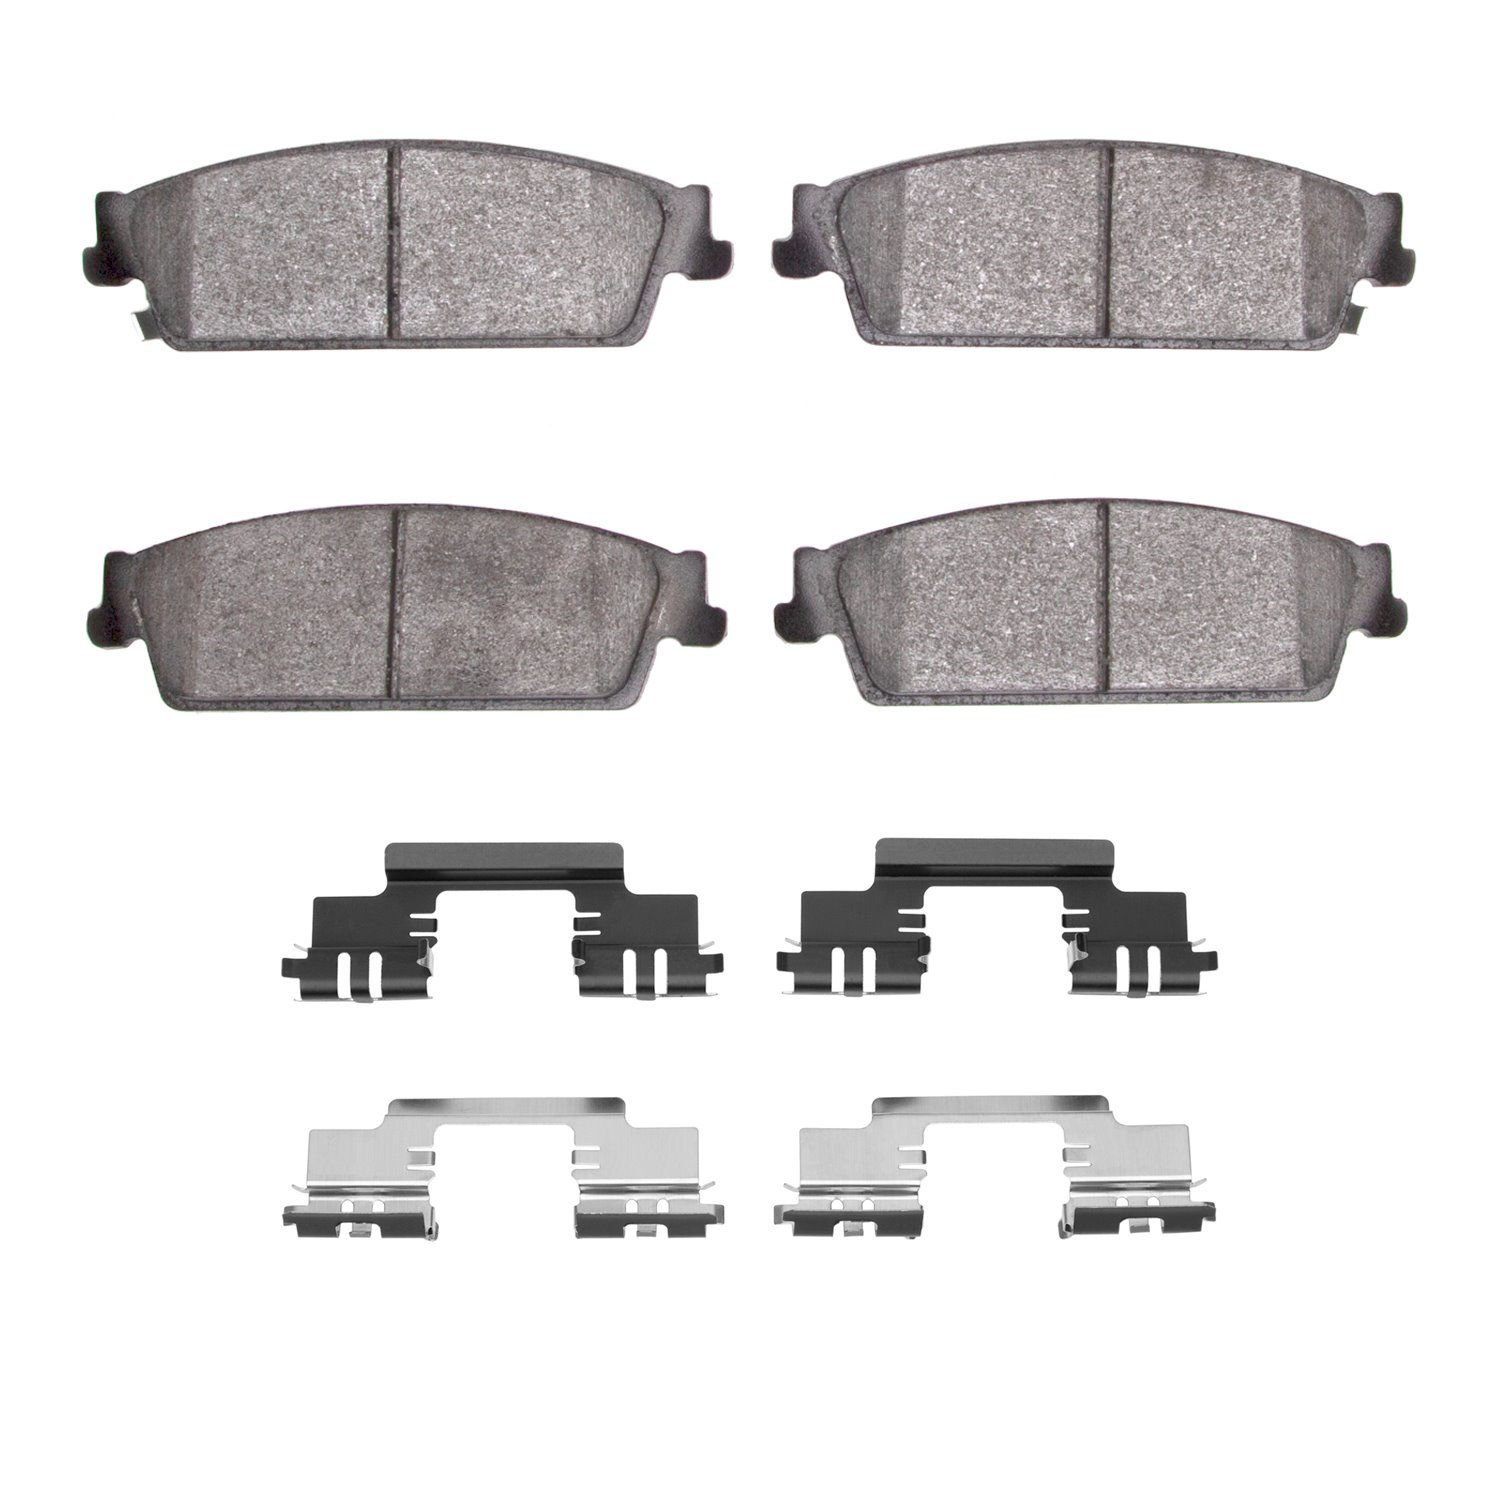 1310-1194-01 3000-Series Ceramic Brake Pads & Hardware Kit, 2007-2014 GM, Position: Rear